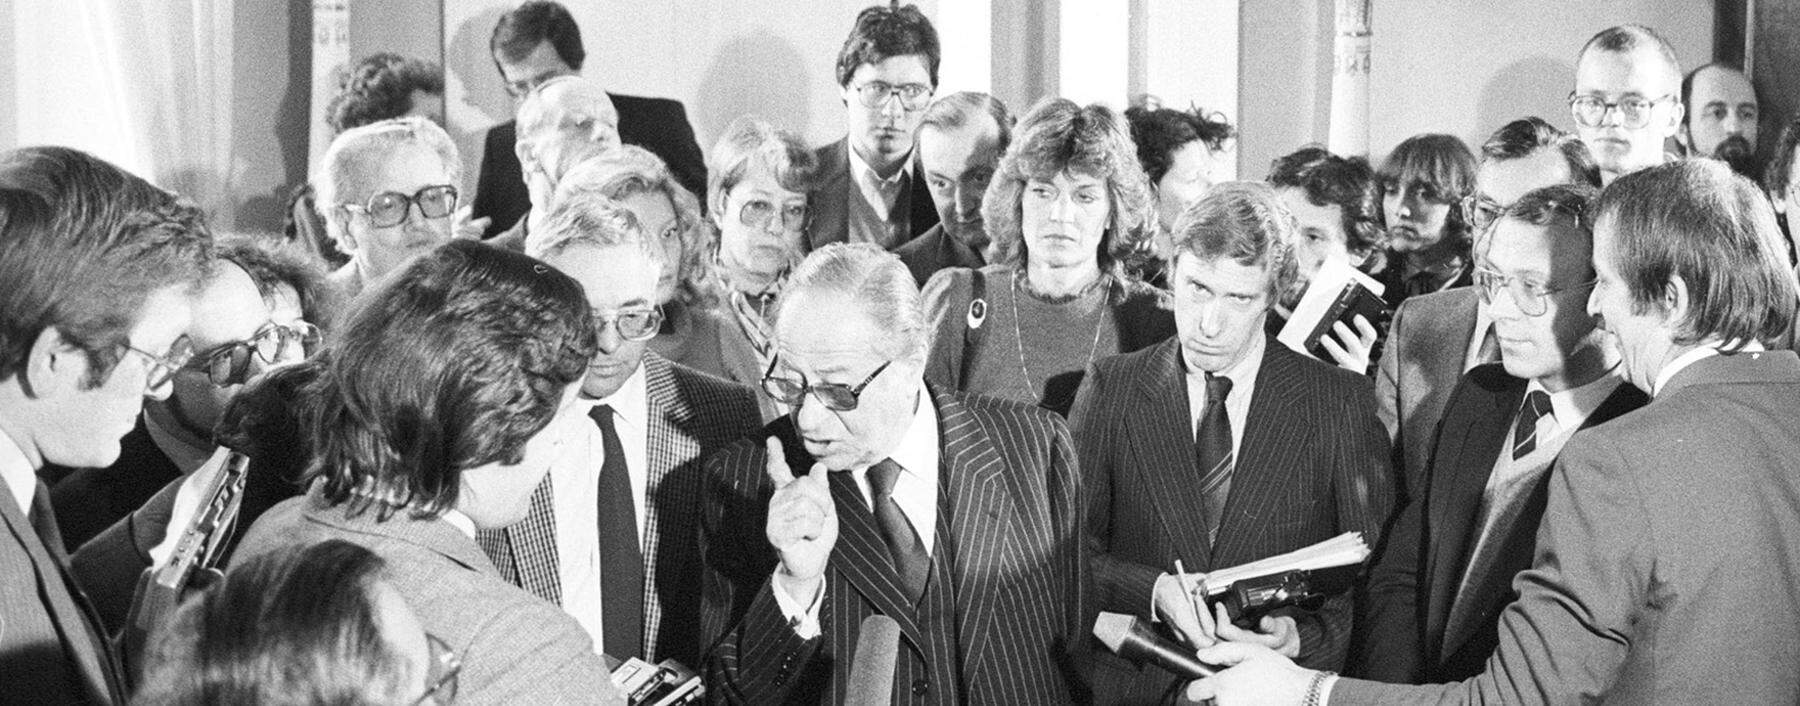 Bis zu einer Stunde dauerte manchmal das Frage-Antwort-Spiel: Pressefoyer nach dem Ministerrat, um 1978.